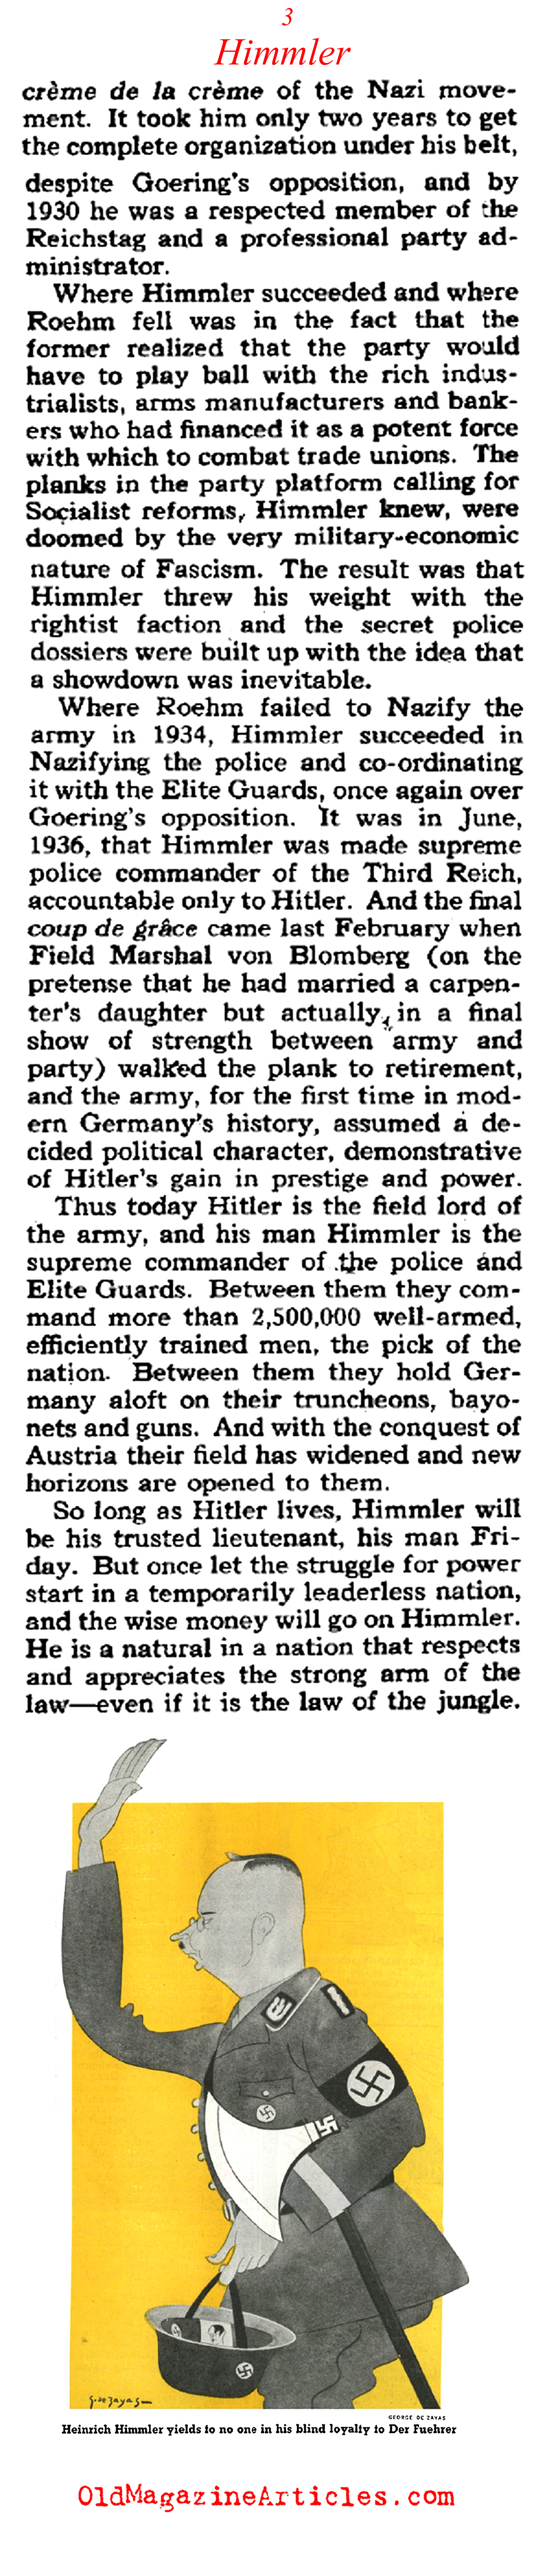 Heinrich Himmler (Collier's Magazine, 1938)